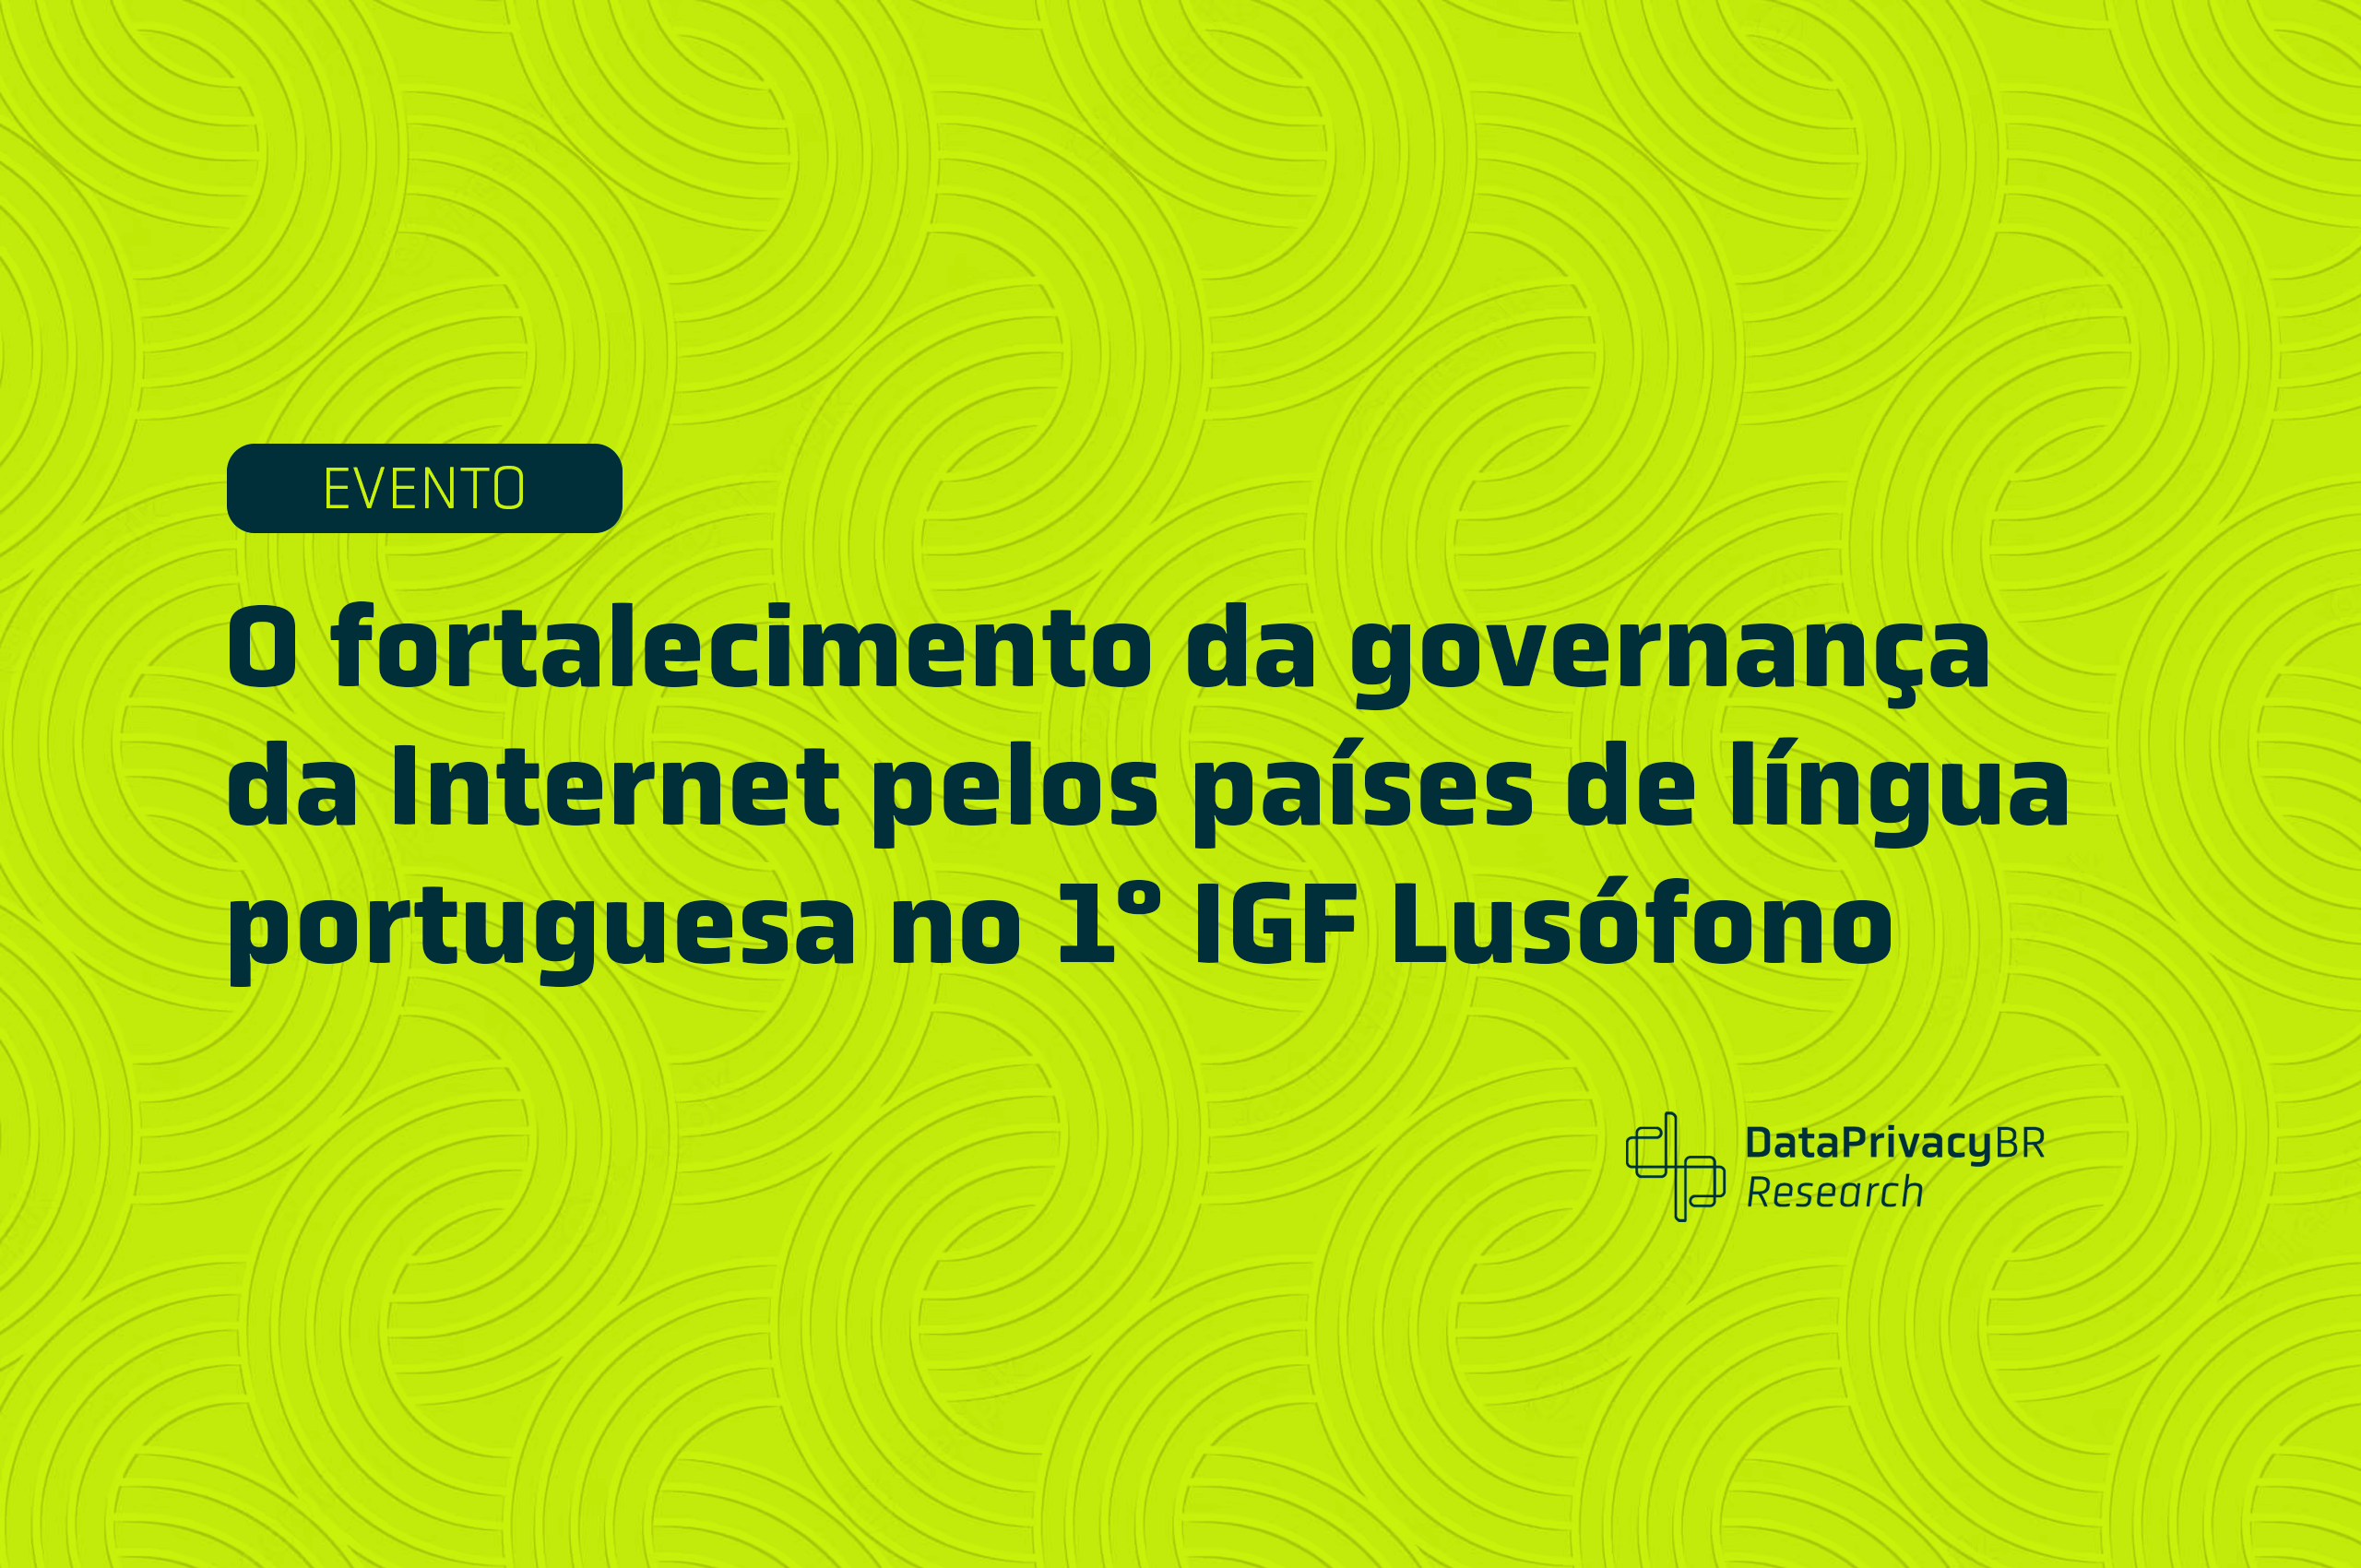 O fortalecimento da governança da Internet pelos países de língua portuguesa no 1° IGF Lusófono